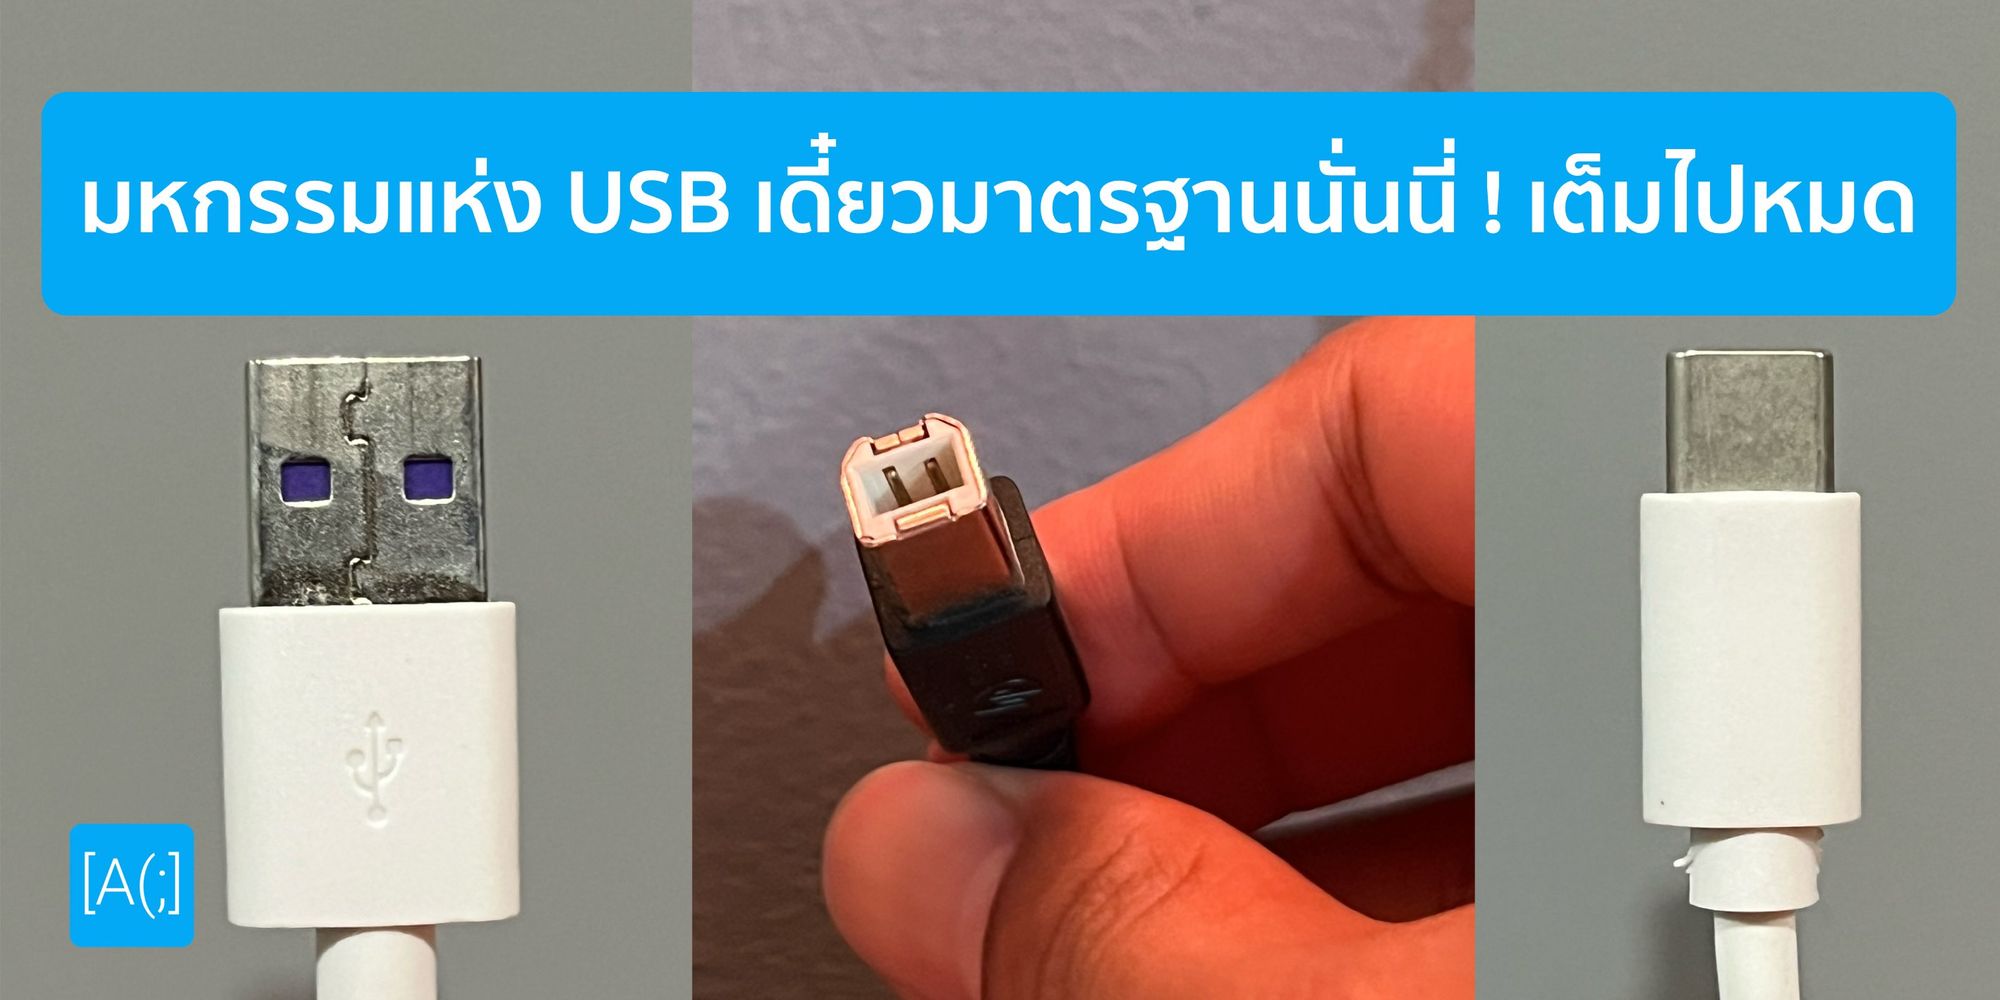 มหกรรมแห่ง USB เดี๋ยวมาตรฐานนั่นนี่ ! เต็มไปหมด